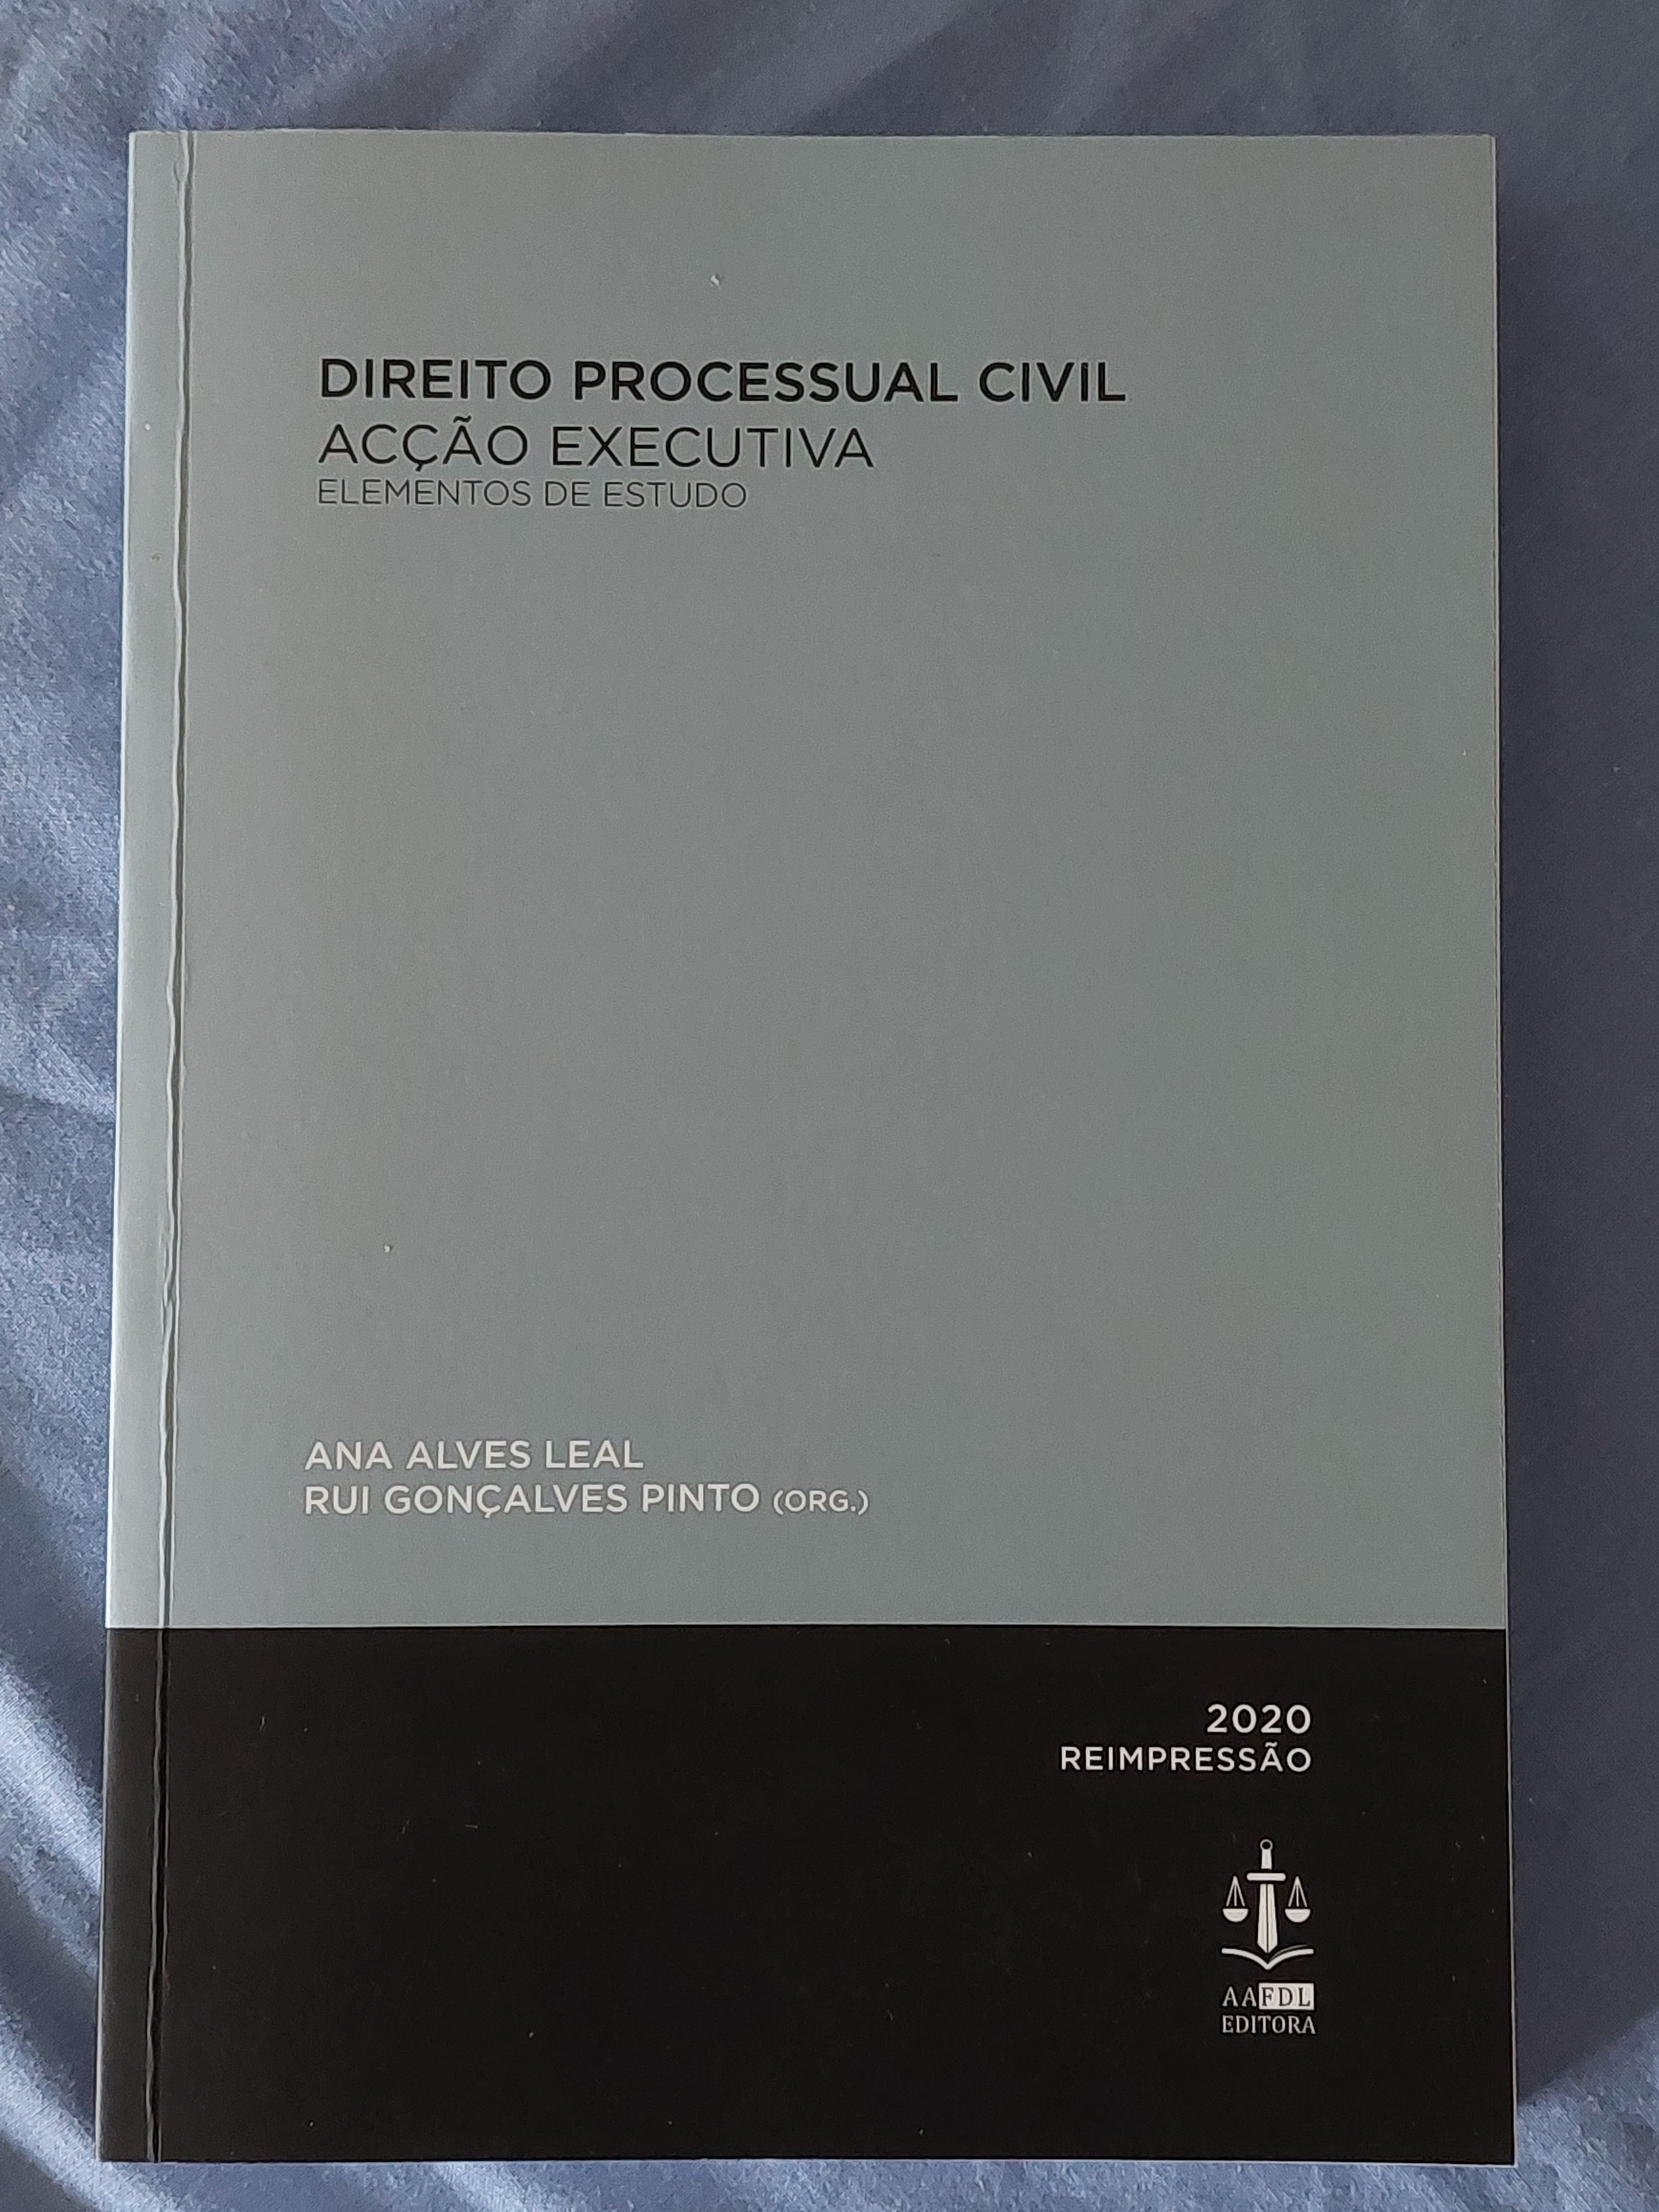 Direito Processual Civil, Ação Executiva, Ana Alves Leal